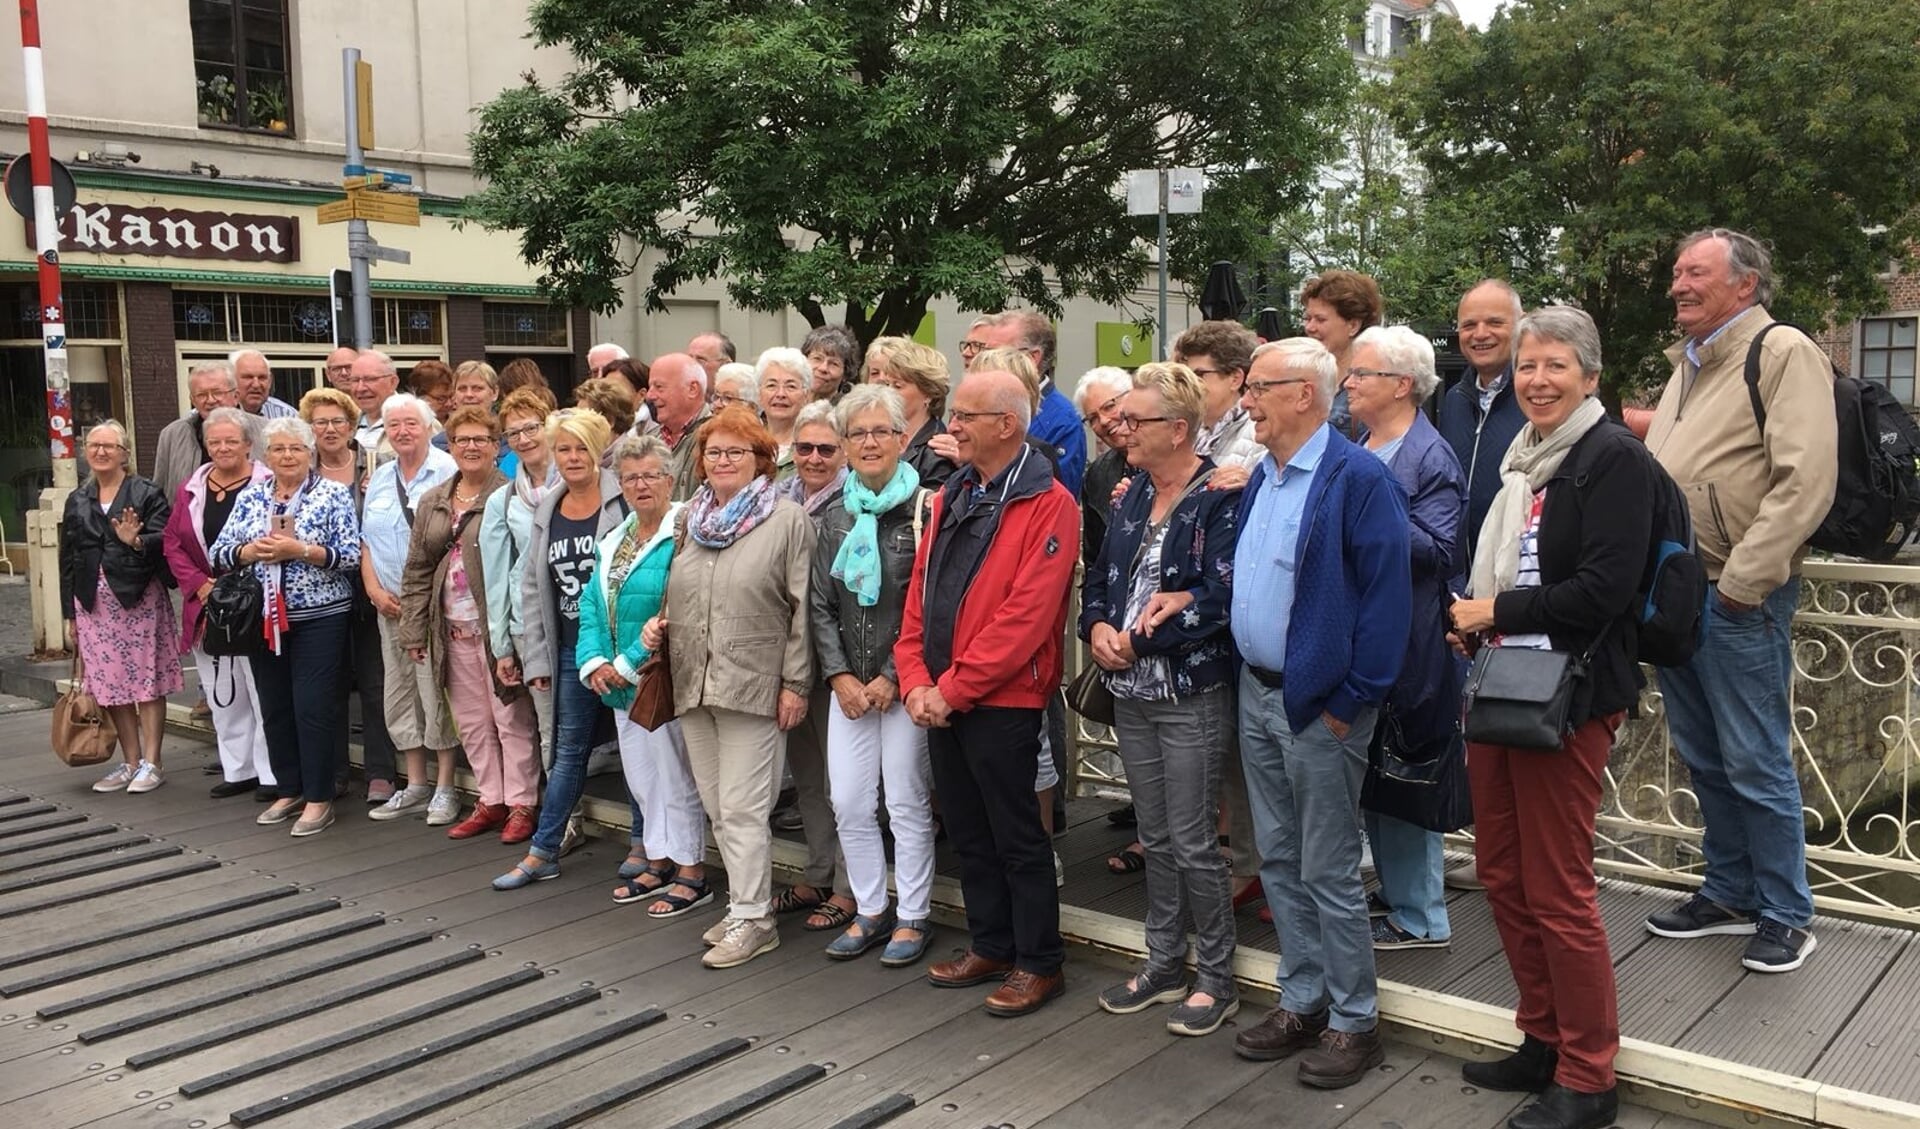 De groep in het centrum van Gent. Foto: Hillie van Gijssel